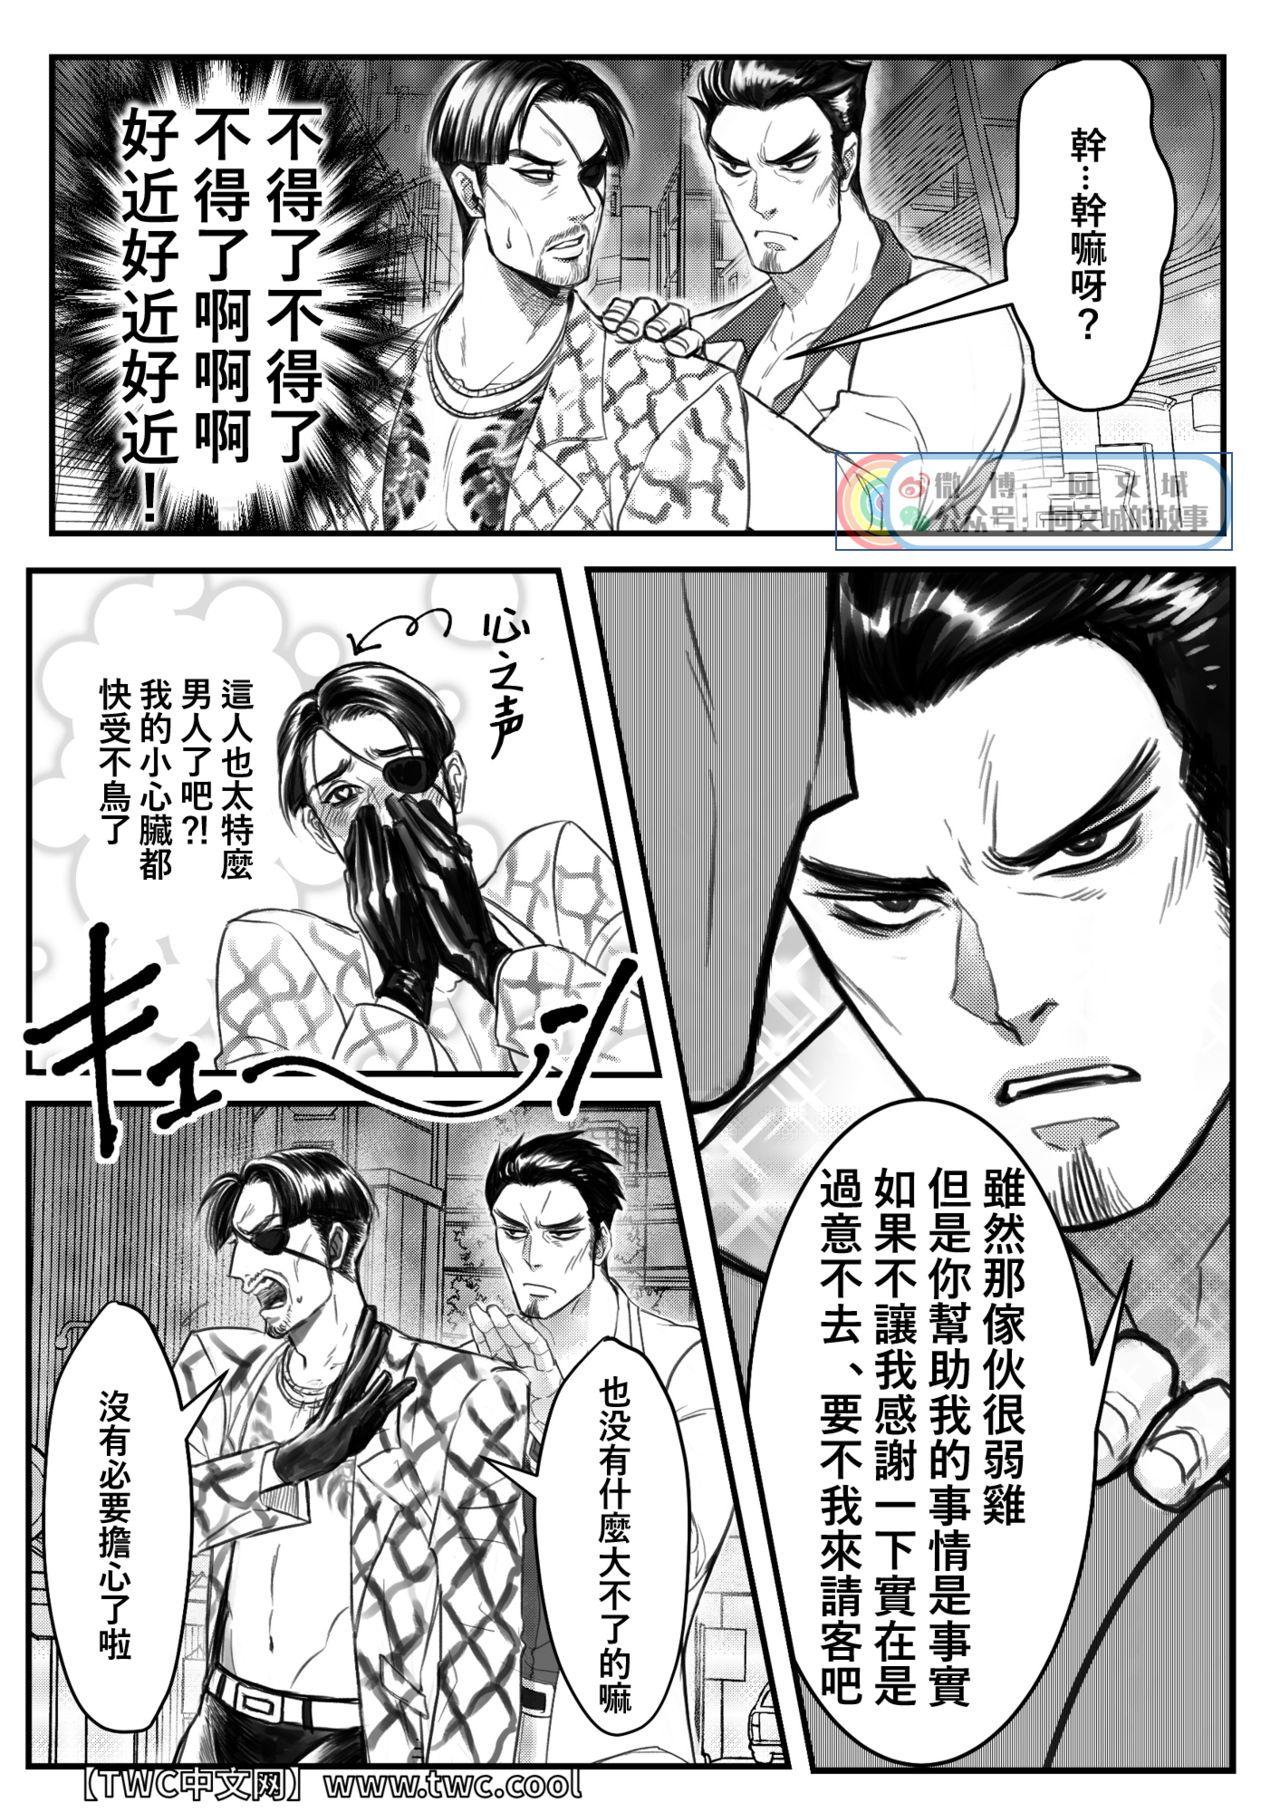 Cameltoe Gokudou Ningyo Majima - Ryu ga gotoku | yakuza Gorgeous - Page 8